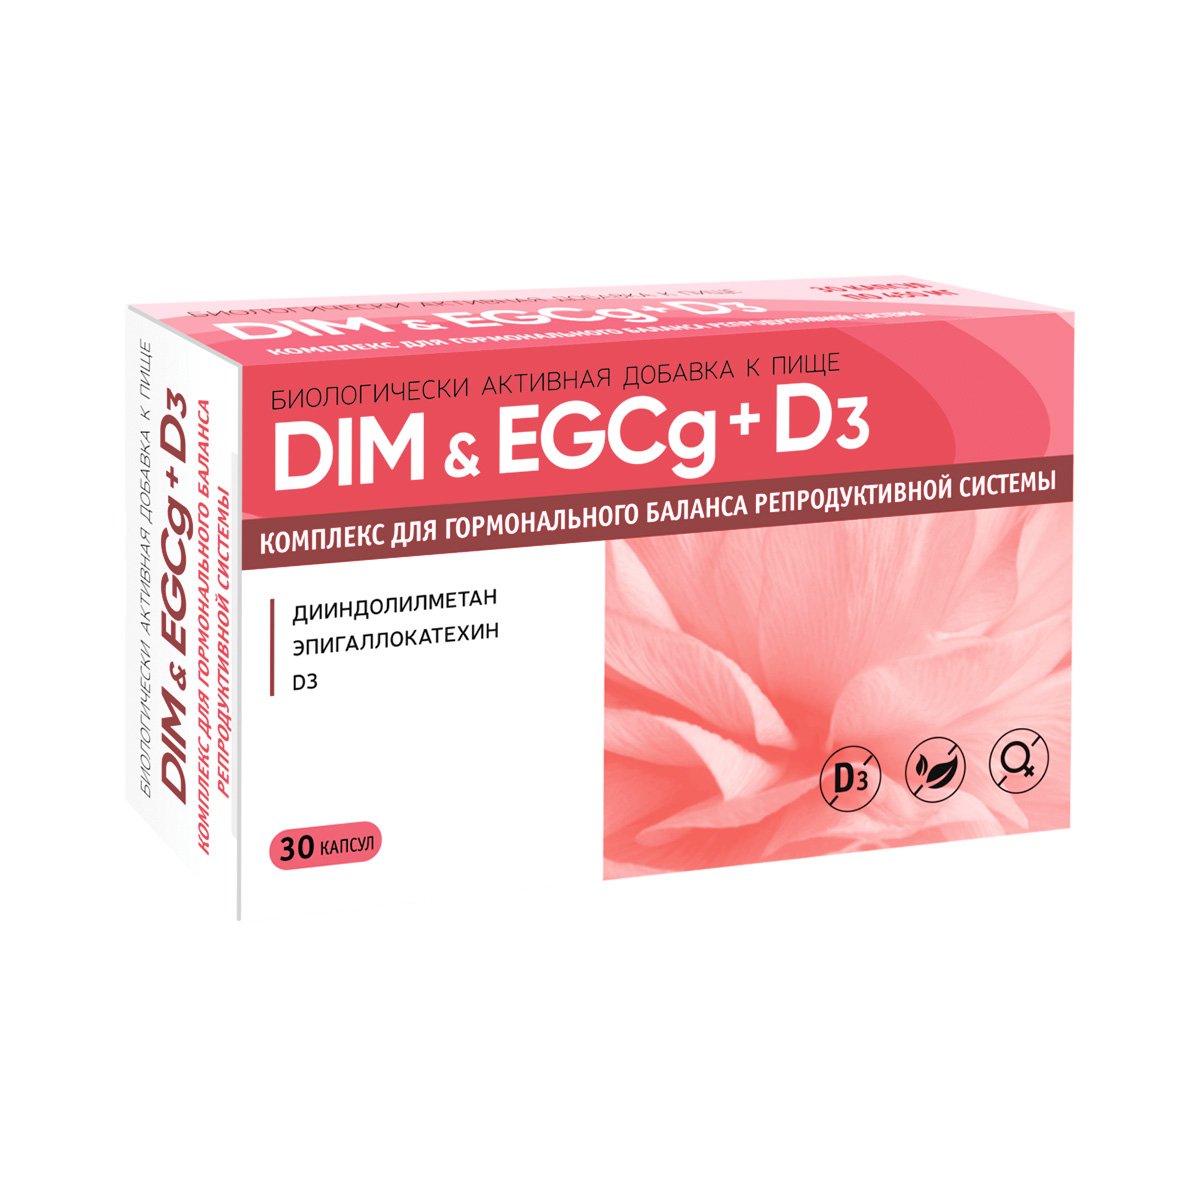 DIM & EGCg+D3 Комплекс для гормонального баланса репродуктивной системы капсулы 450 мг 30 шт Биотерра